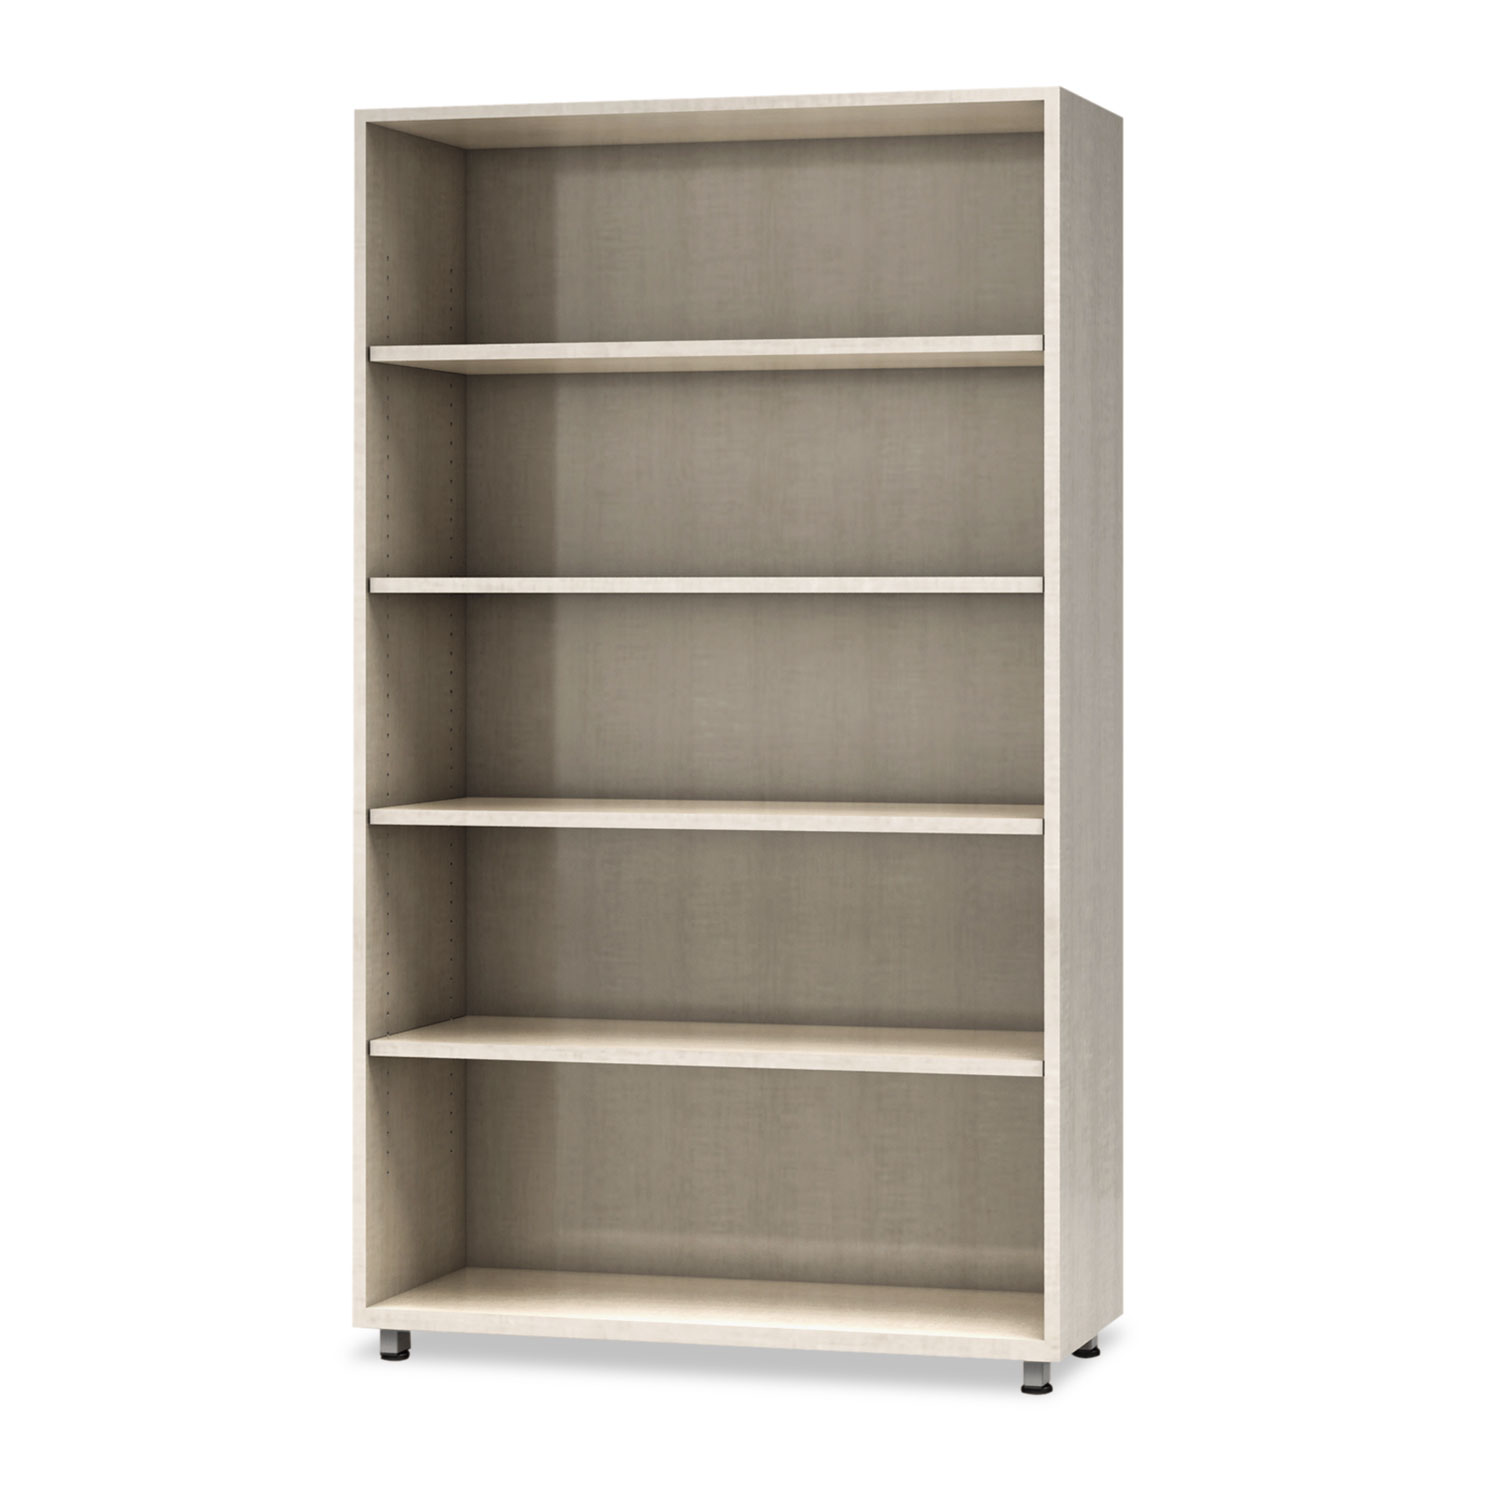  Safco EZBC3662AGX e5 Series Five-Shelf Bookcase, 36w x 15d x 62h, Cocoa (MLNEZBC3662AGX) 